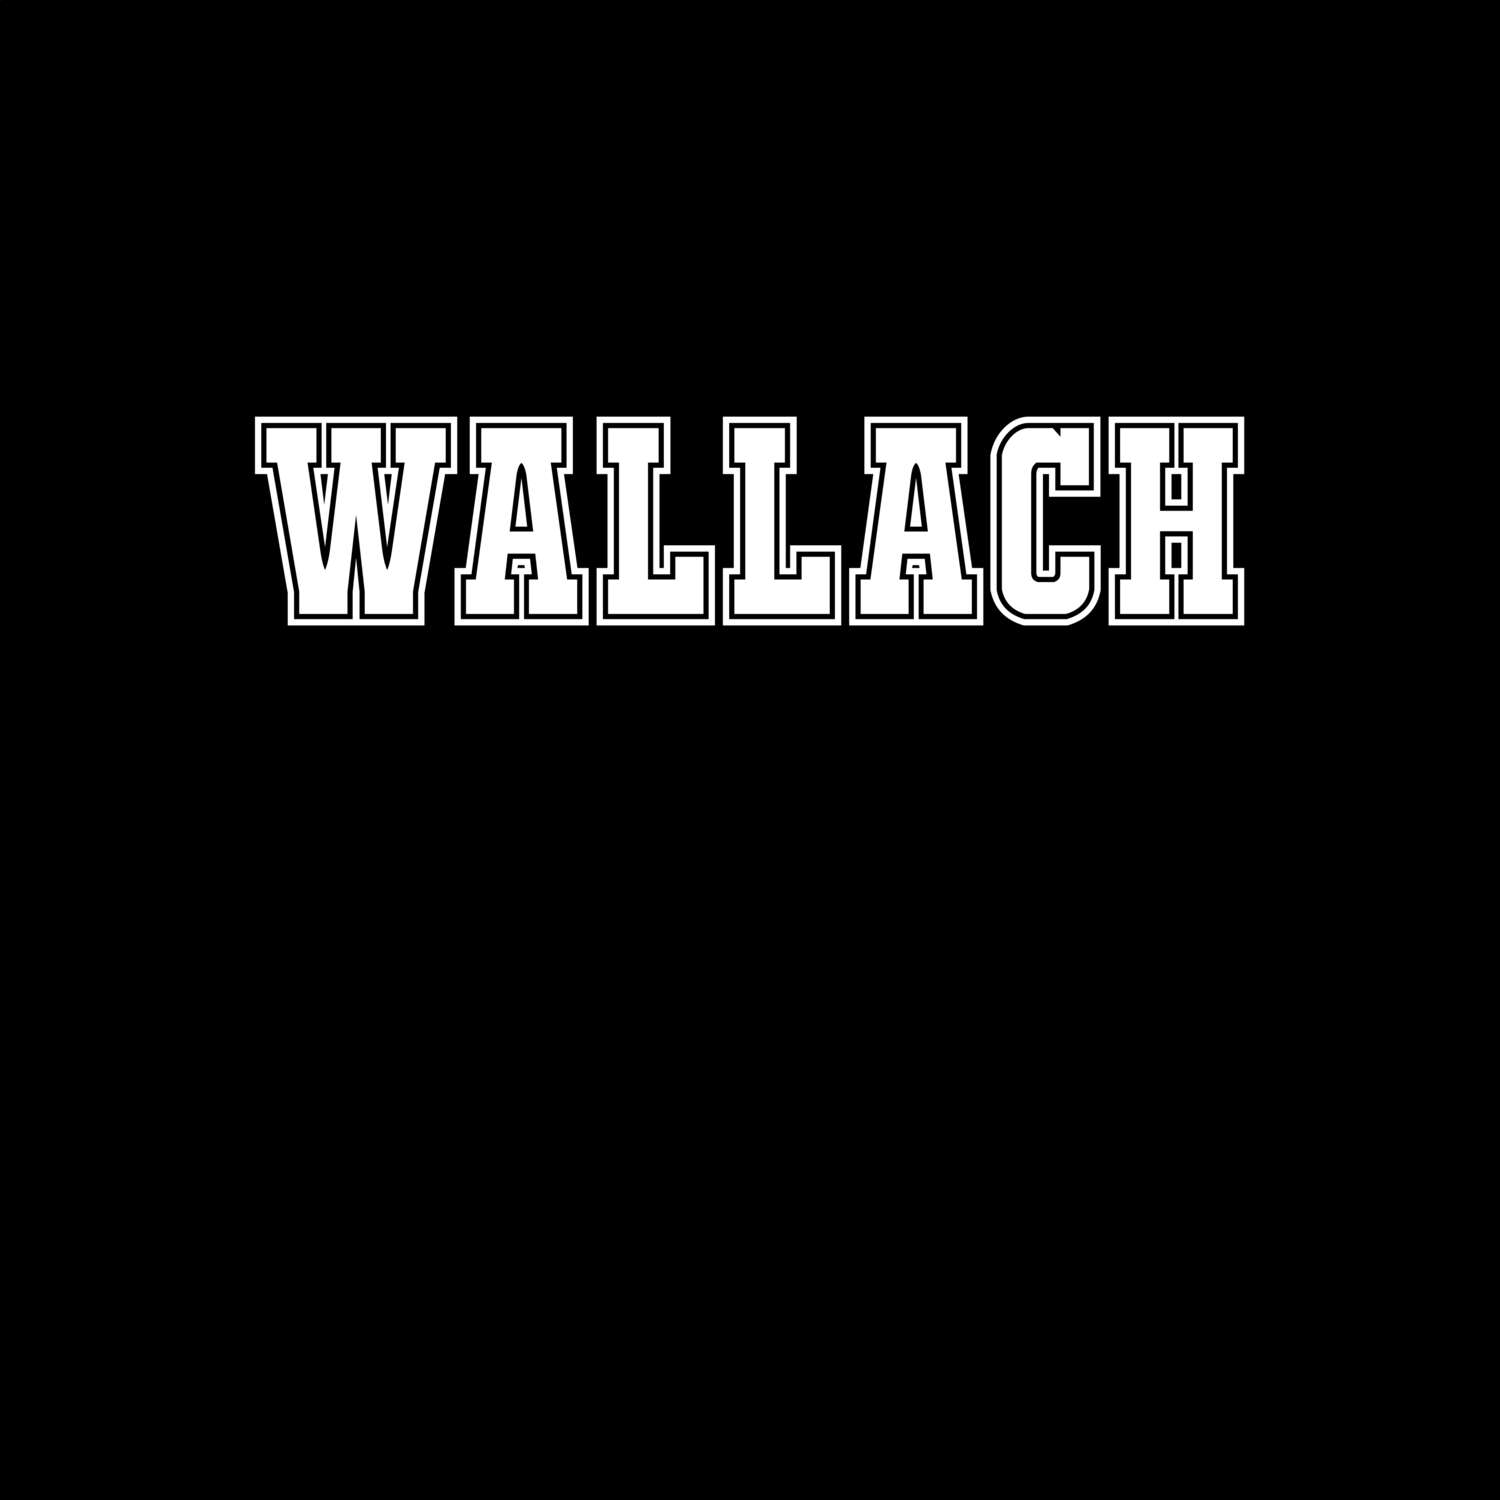 Wallach T-Shirt »Classic«